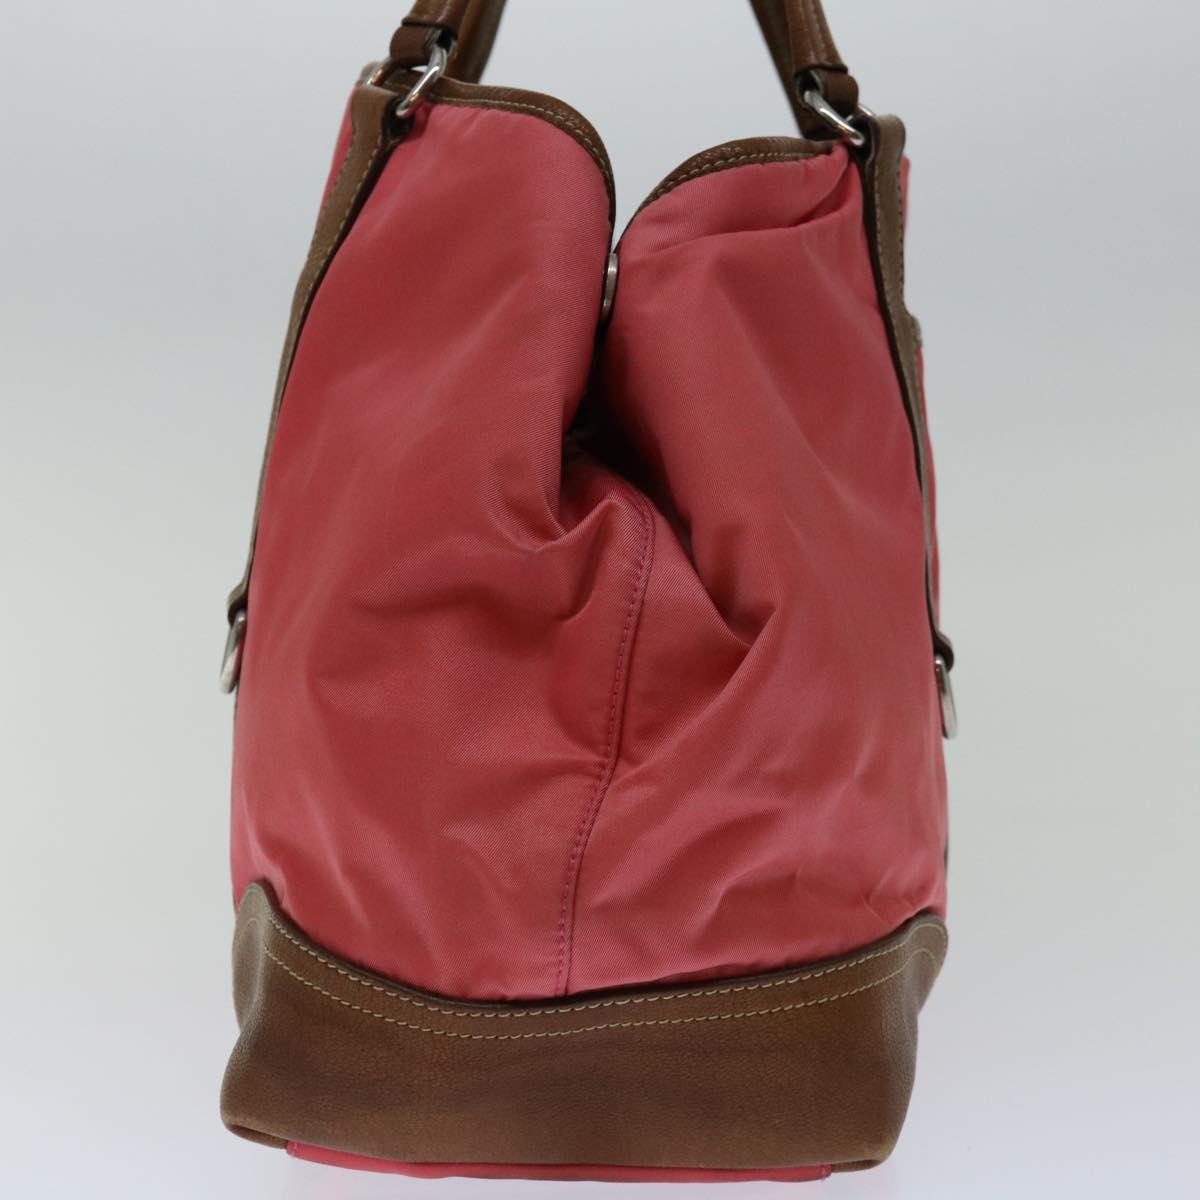 PRADA Tote Bag Nylon Pink Auth 69054